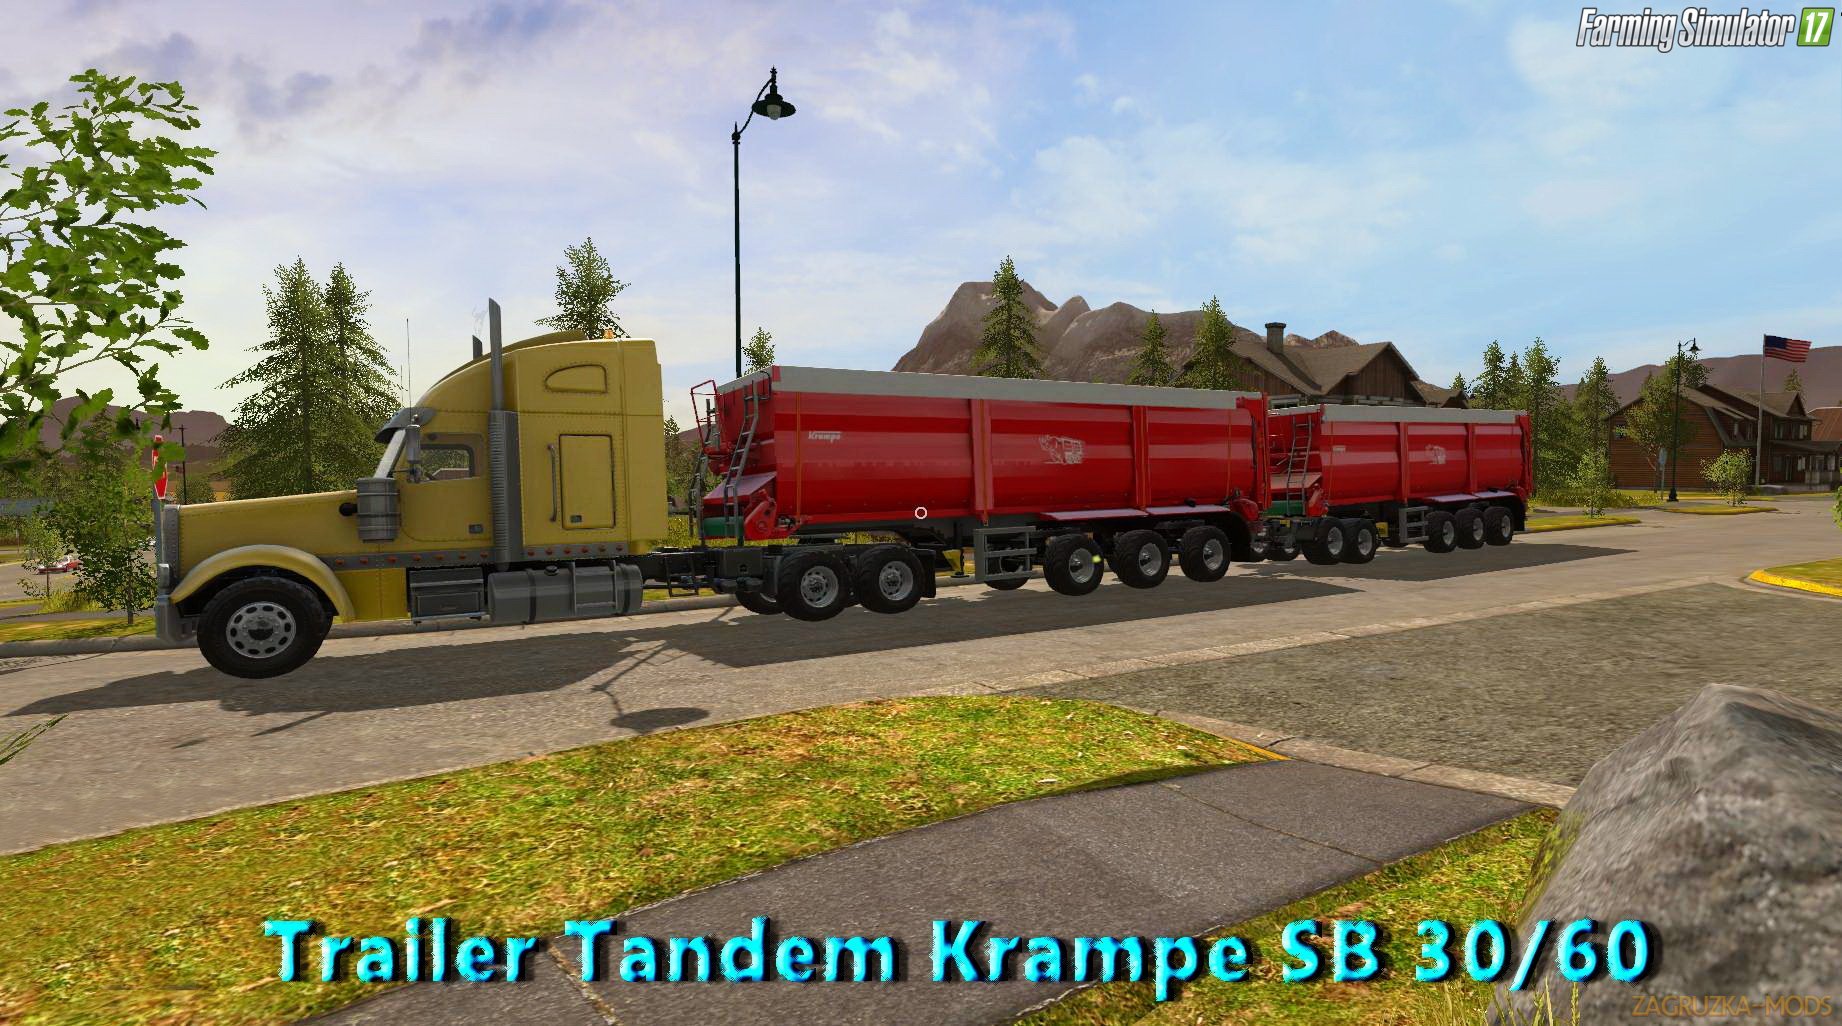 Trailer Tandem Krampe SB 30/60 v1.0 for FS 17